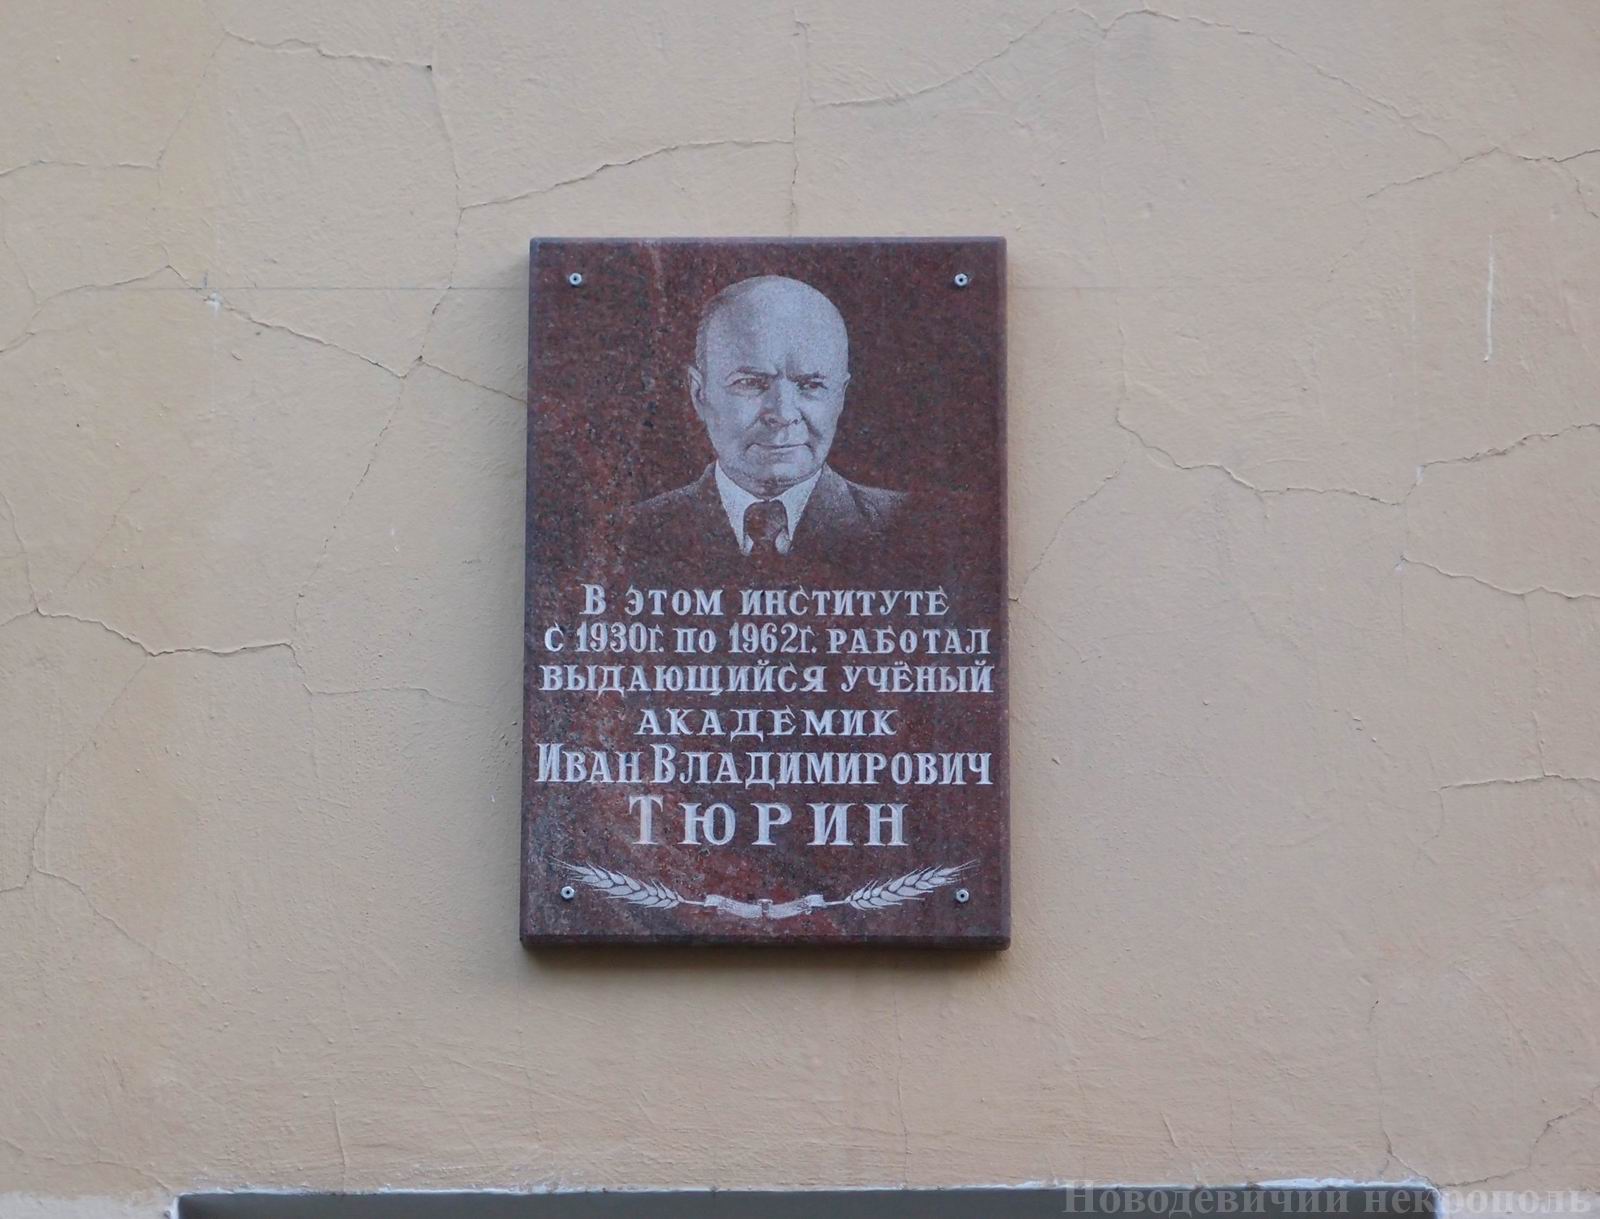 Мемориальная доска Тюрину И.В. (1892-1962), в Пыжевском переулке, дом 7.